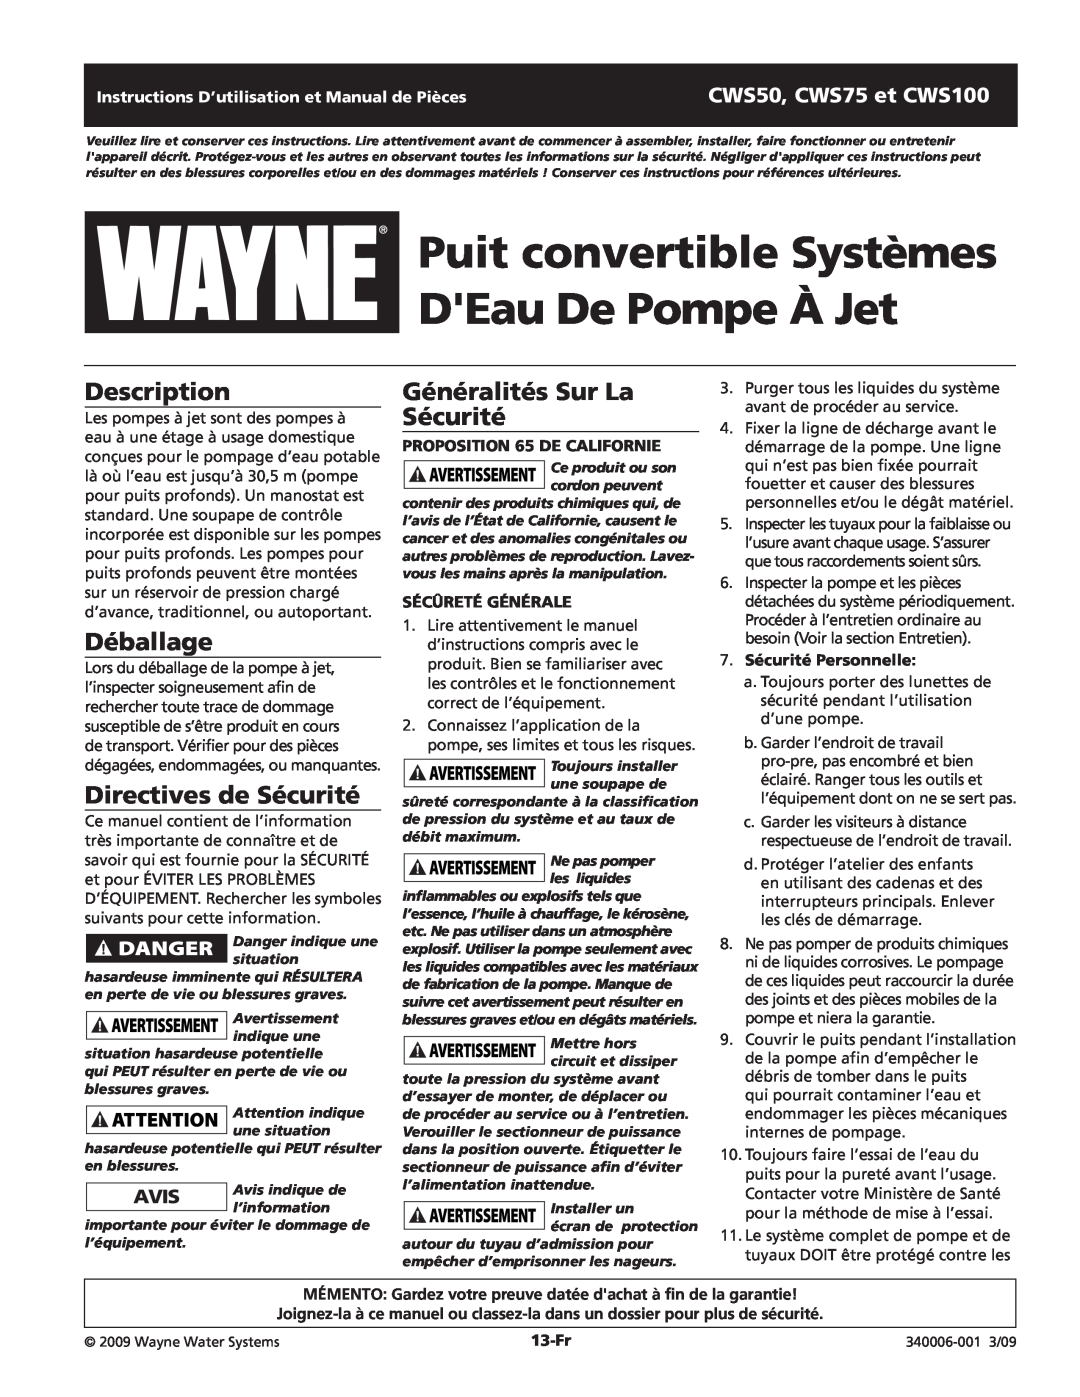 Wayne CWS75 Puit convertible Systèmes DEau De Pompe À Jet, Déballage, Directives de Sécurité, Généralités Sur La Sécurité 